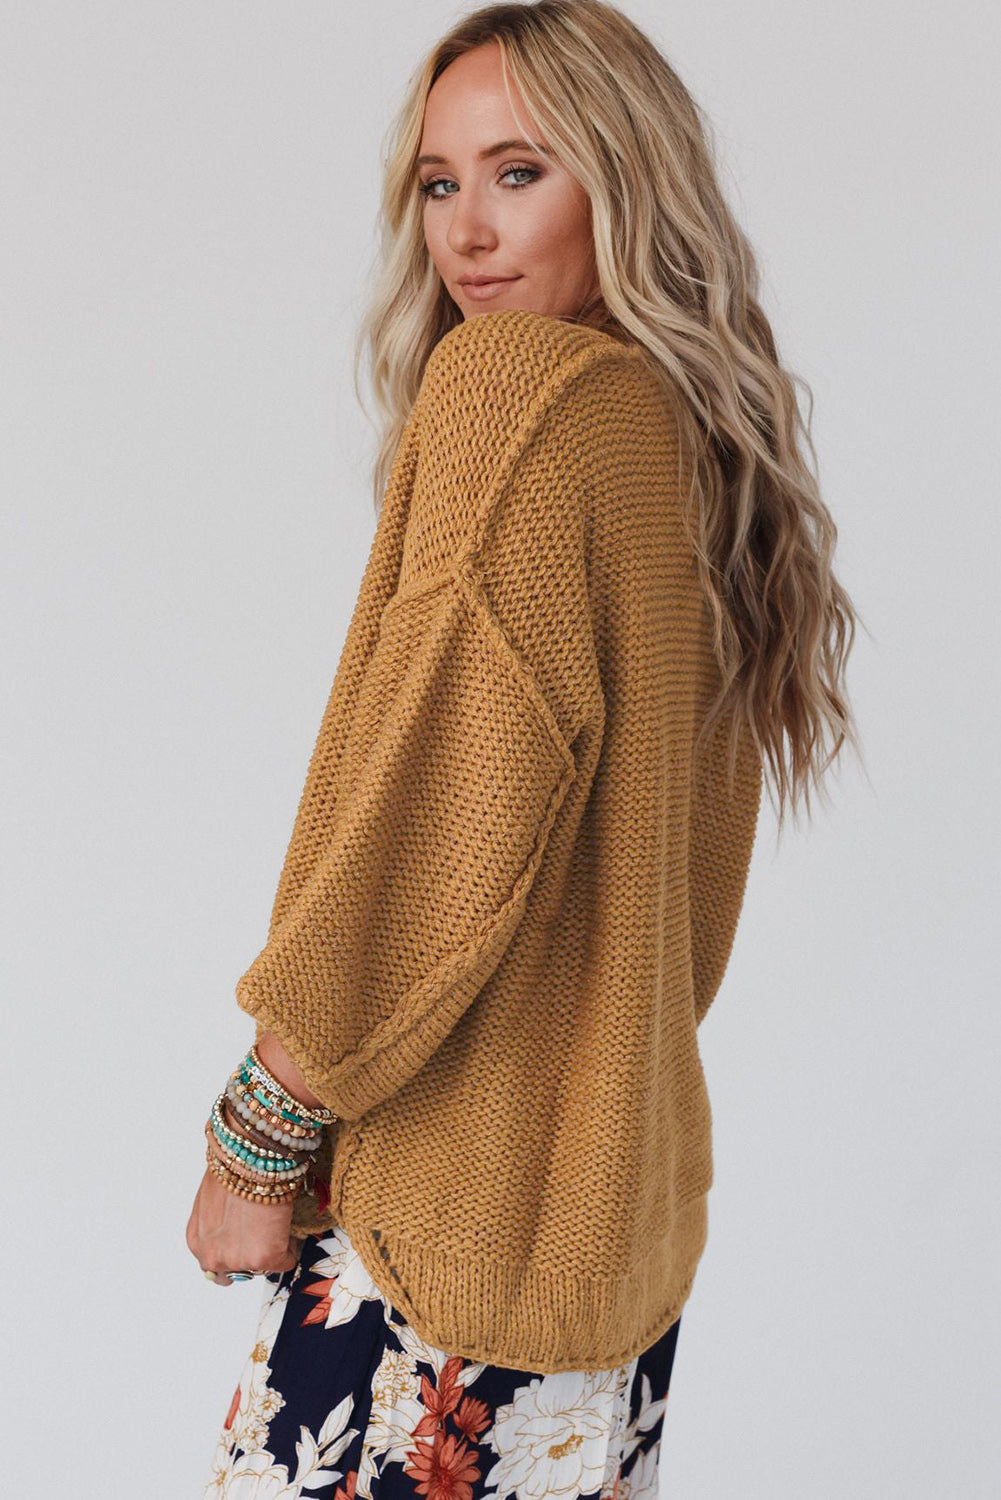 Rjav ohlapen pleten pulover s slouchy teksturo